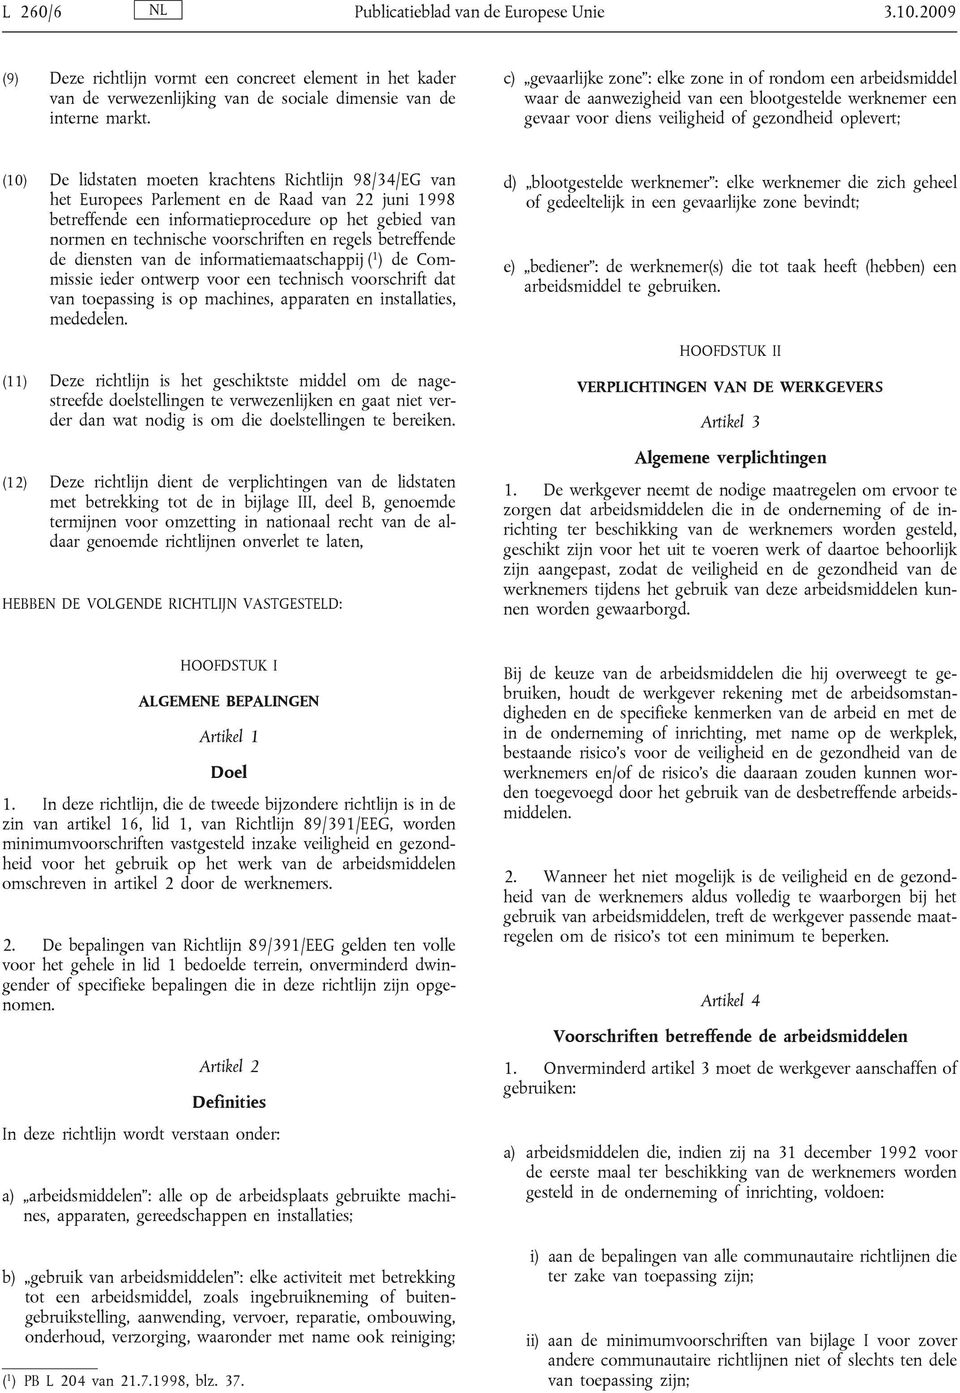 krachtens Richtlijn 98/34/EG van het Europees Parlement en de Raad van 22 juni 1998 betreffende een informatieprocedure op het gebied van normen en technische voorschriften en regels betreffende de